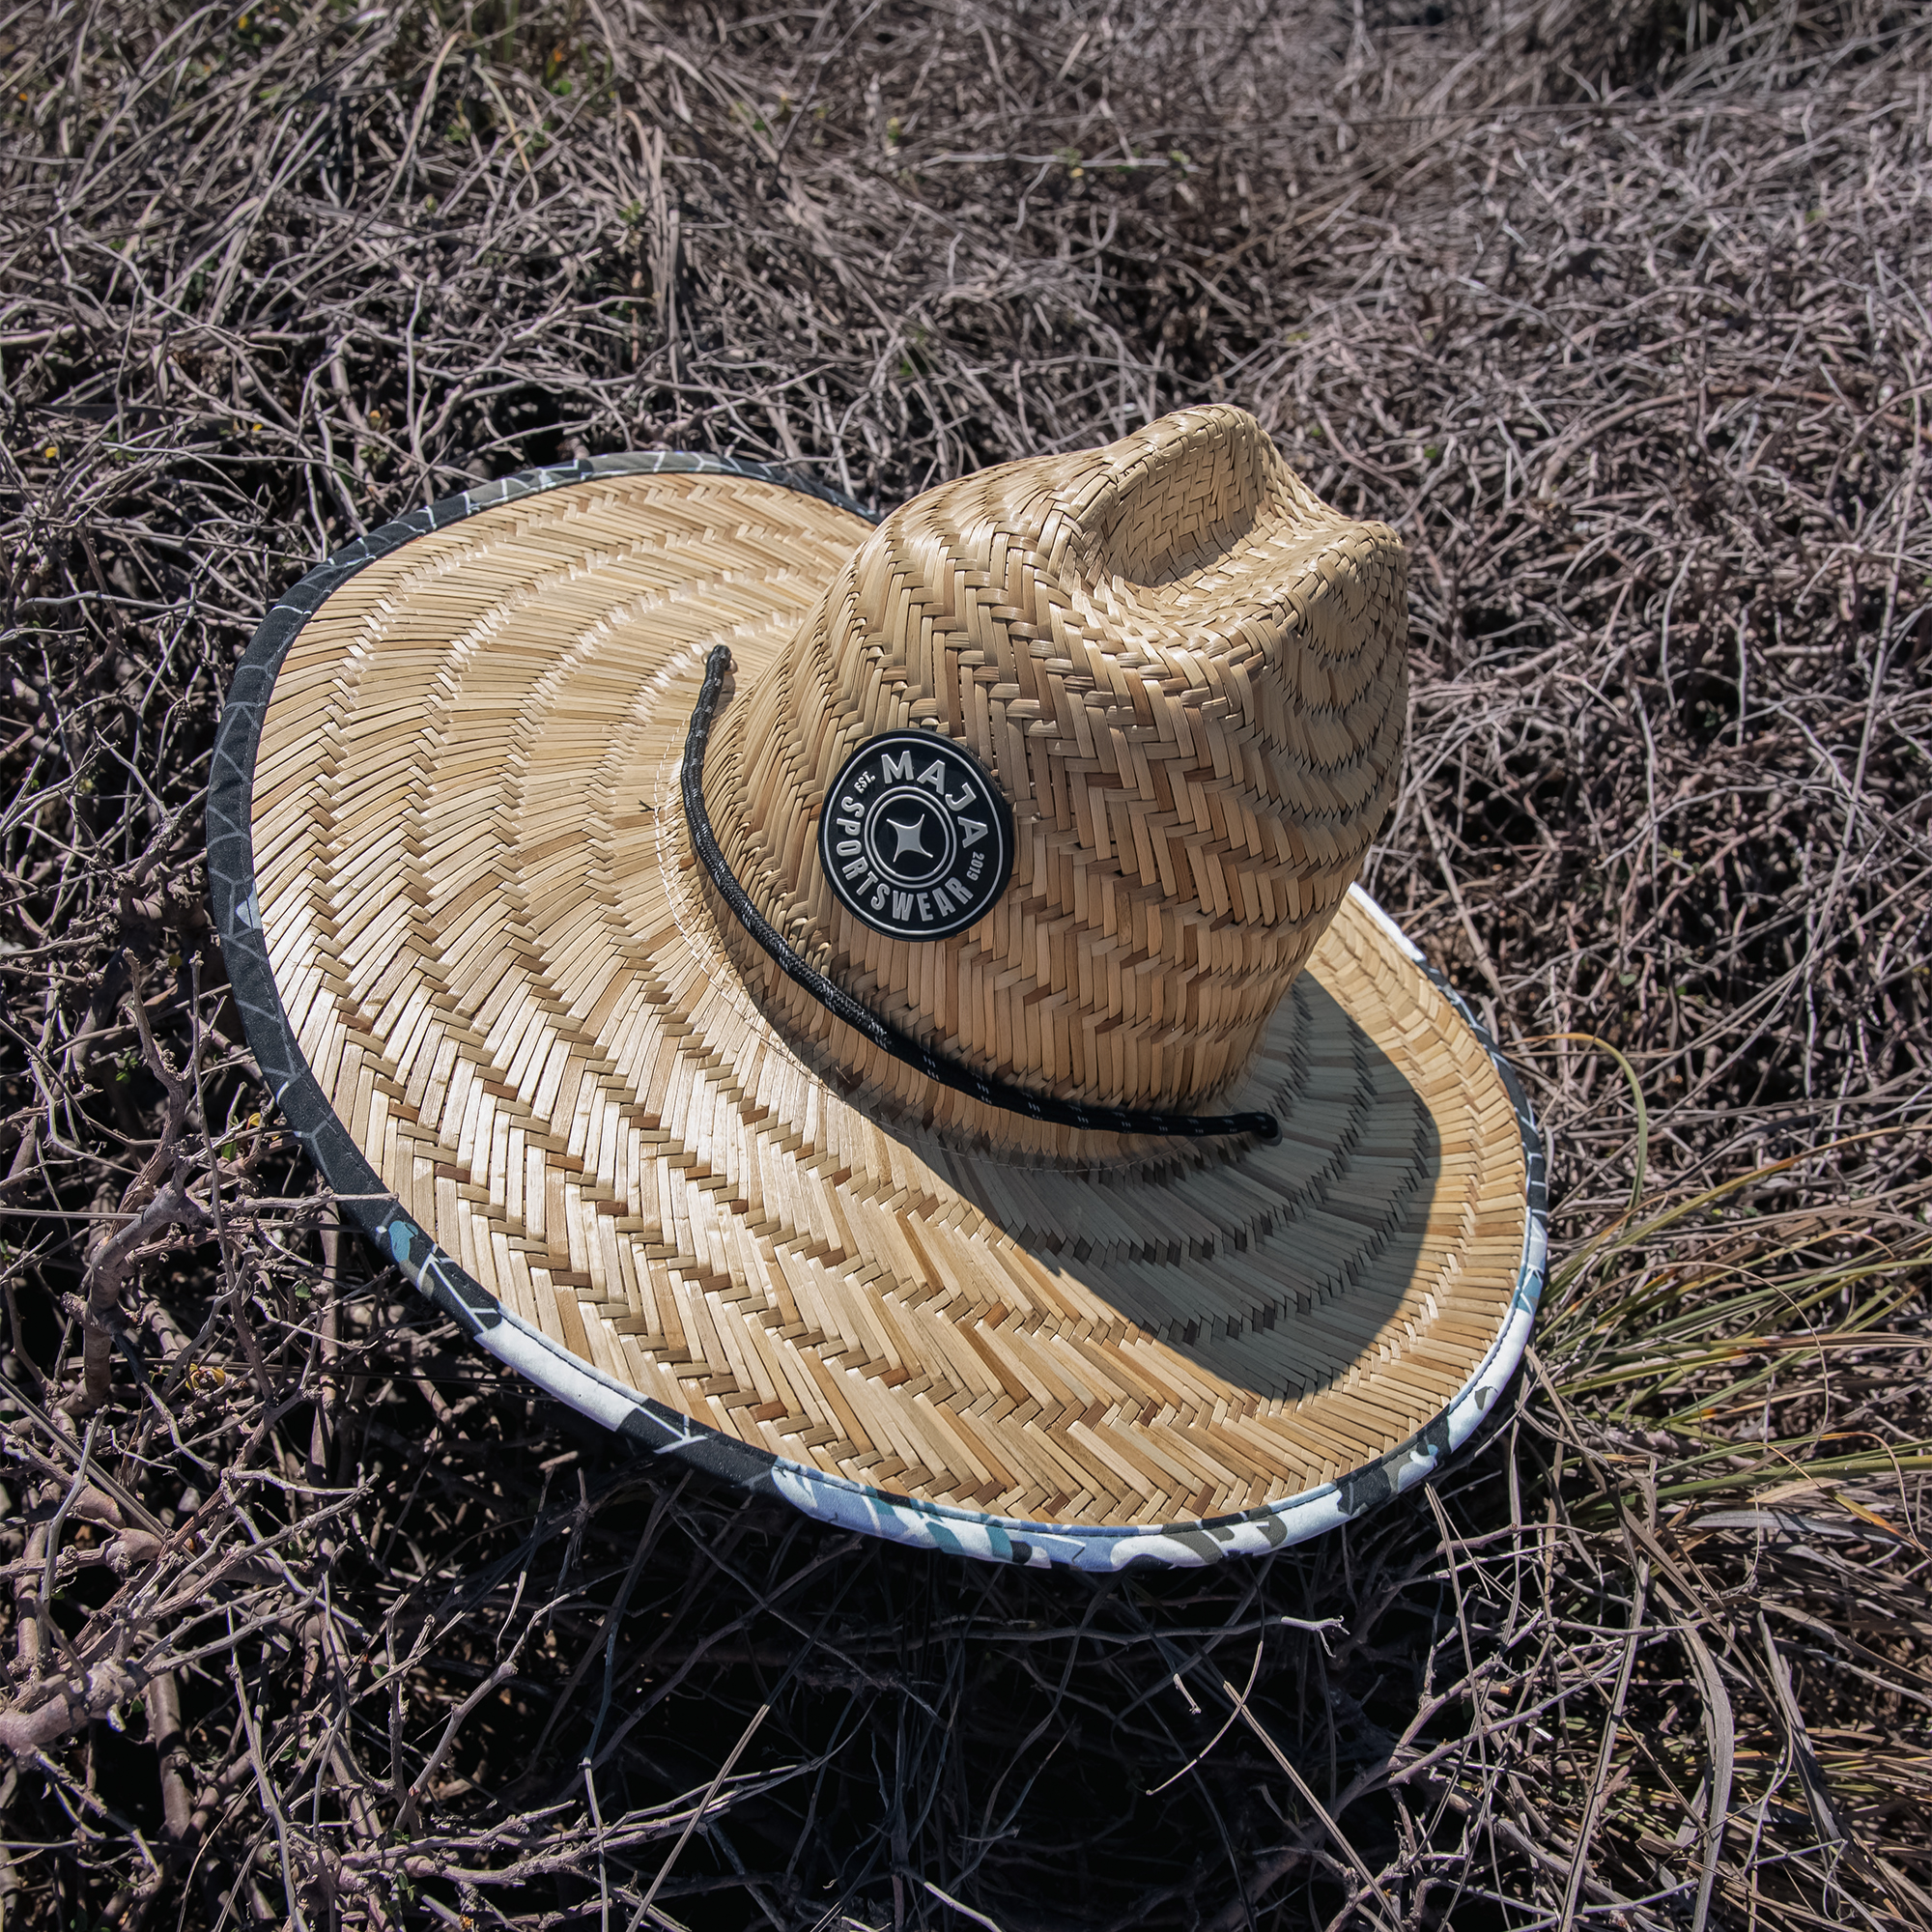 Sombreros De Paja 